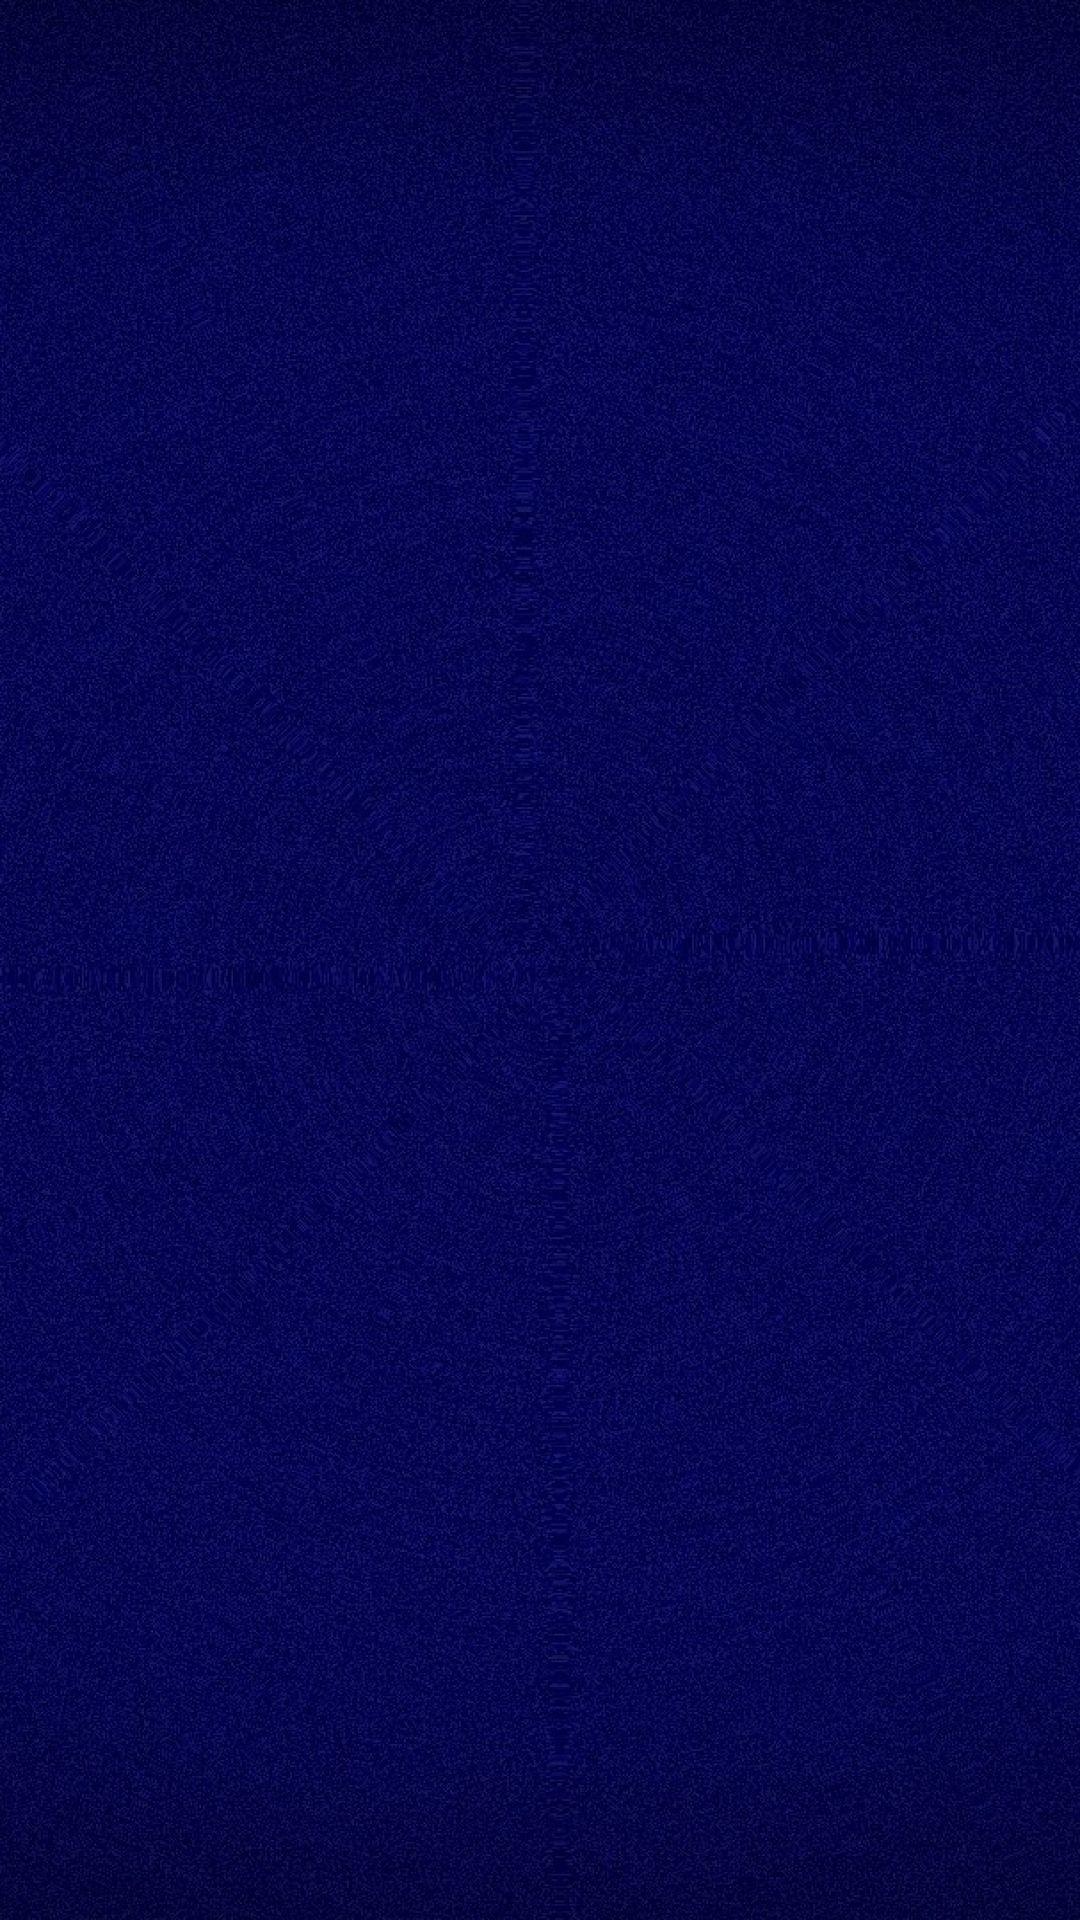 Hình nền màu xanh lam đậm 1080x1920 - Hình nền nhóm